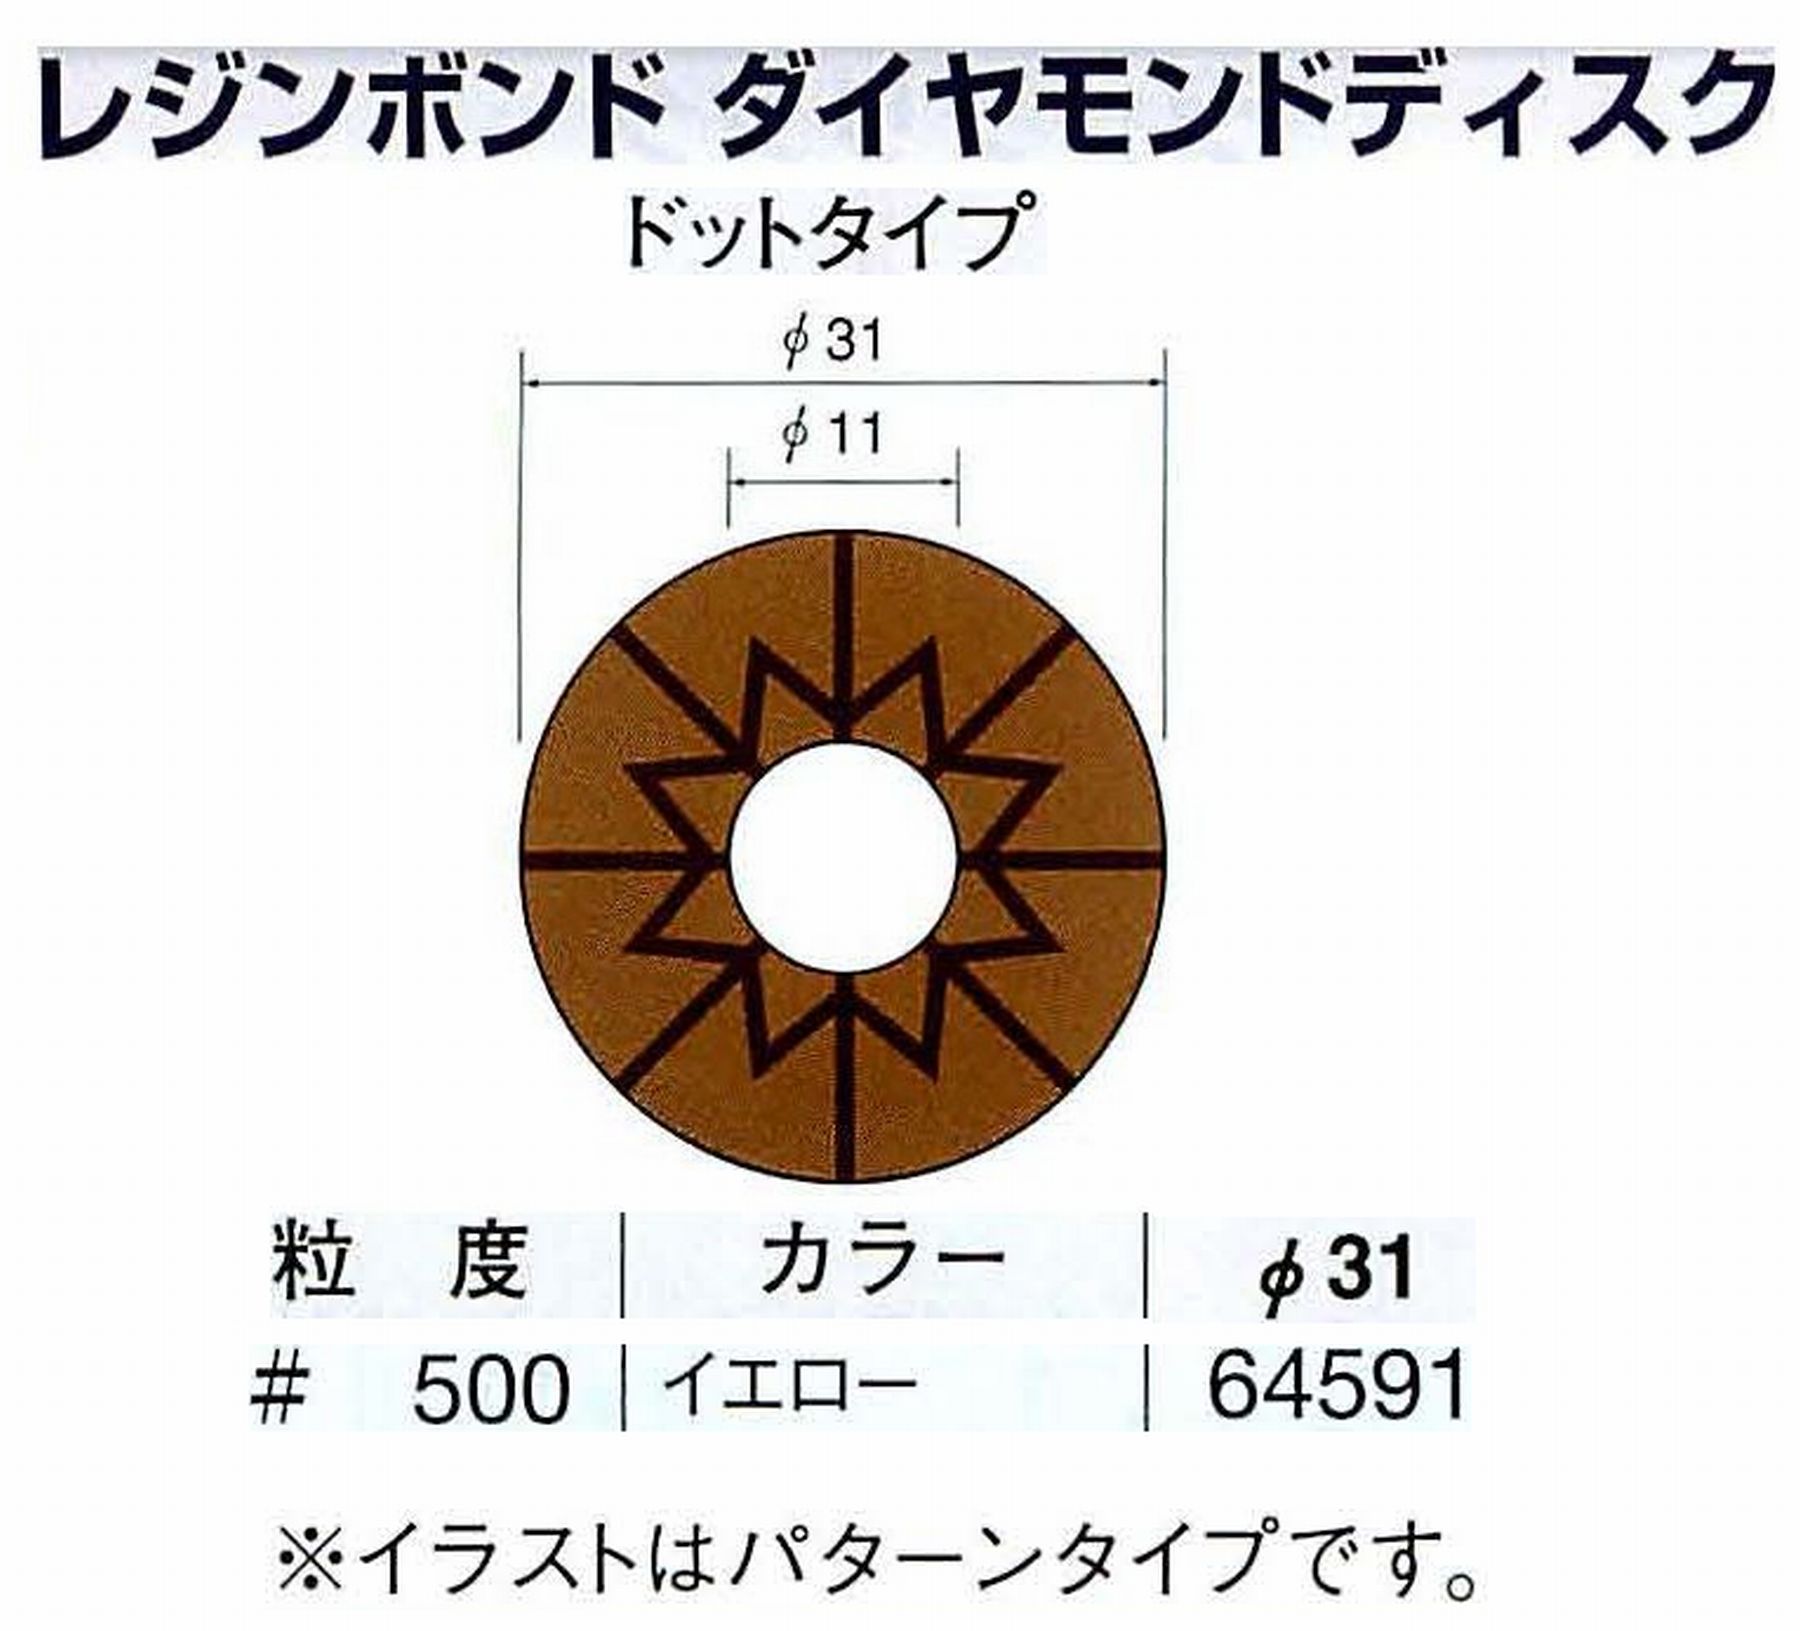 ナカニシ/NAKANISHI アングルグラインダ(電動・エアー) アングルアタッチメント専用工具 レジンボンド ダイヤモンドディスク(ドットタイプ) 64591